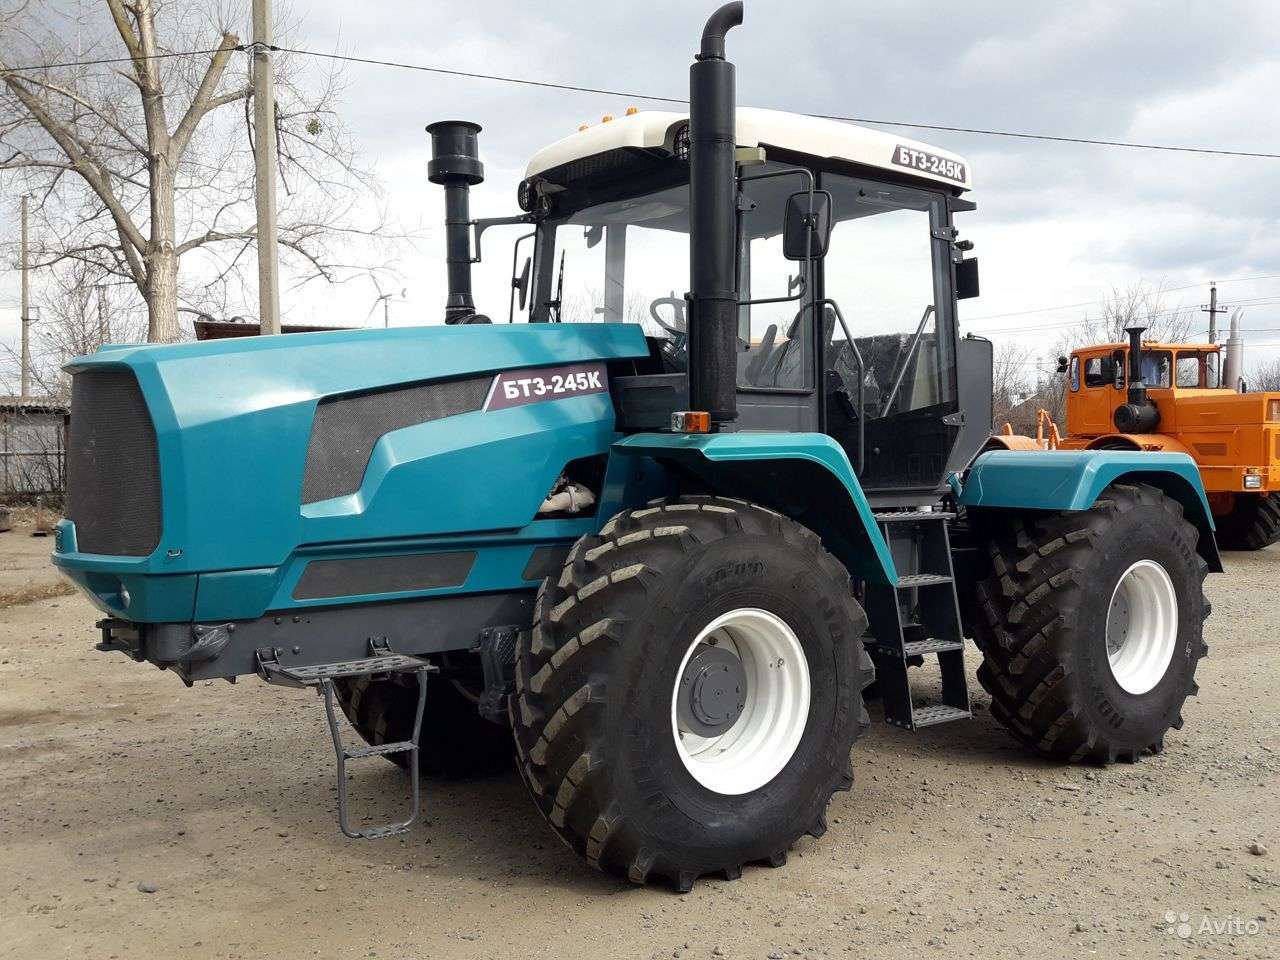 BTZ-245K traktor puzzle online fotóról